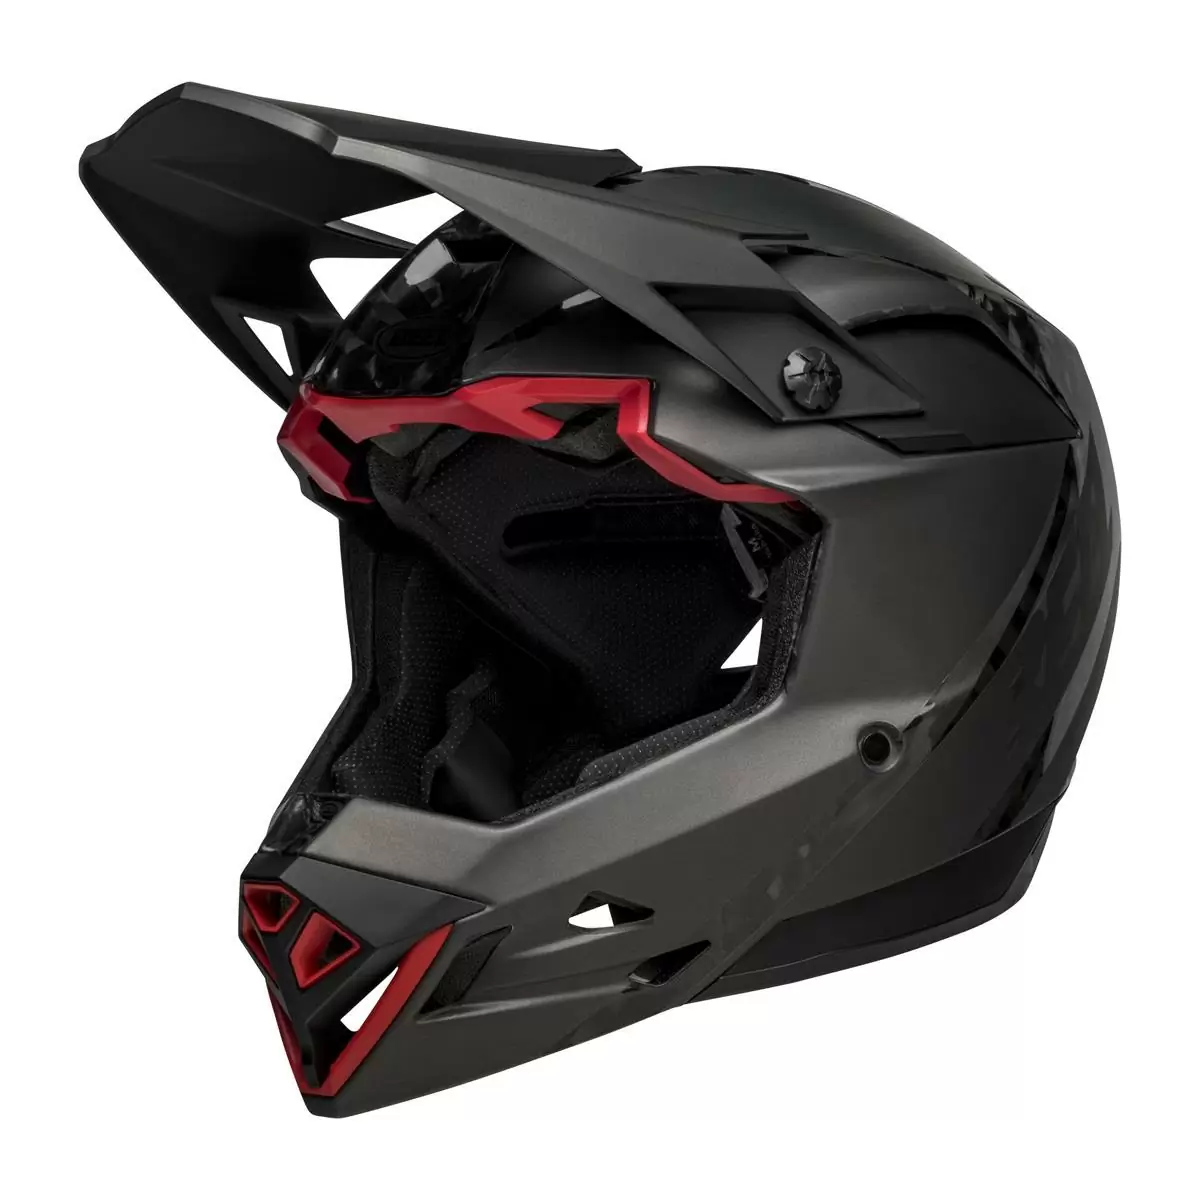 Full-10 Spherical Arise Matte / Gloss Black Carbon Full Face Helmet Size XS/S (51-55cm) #2